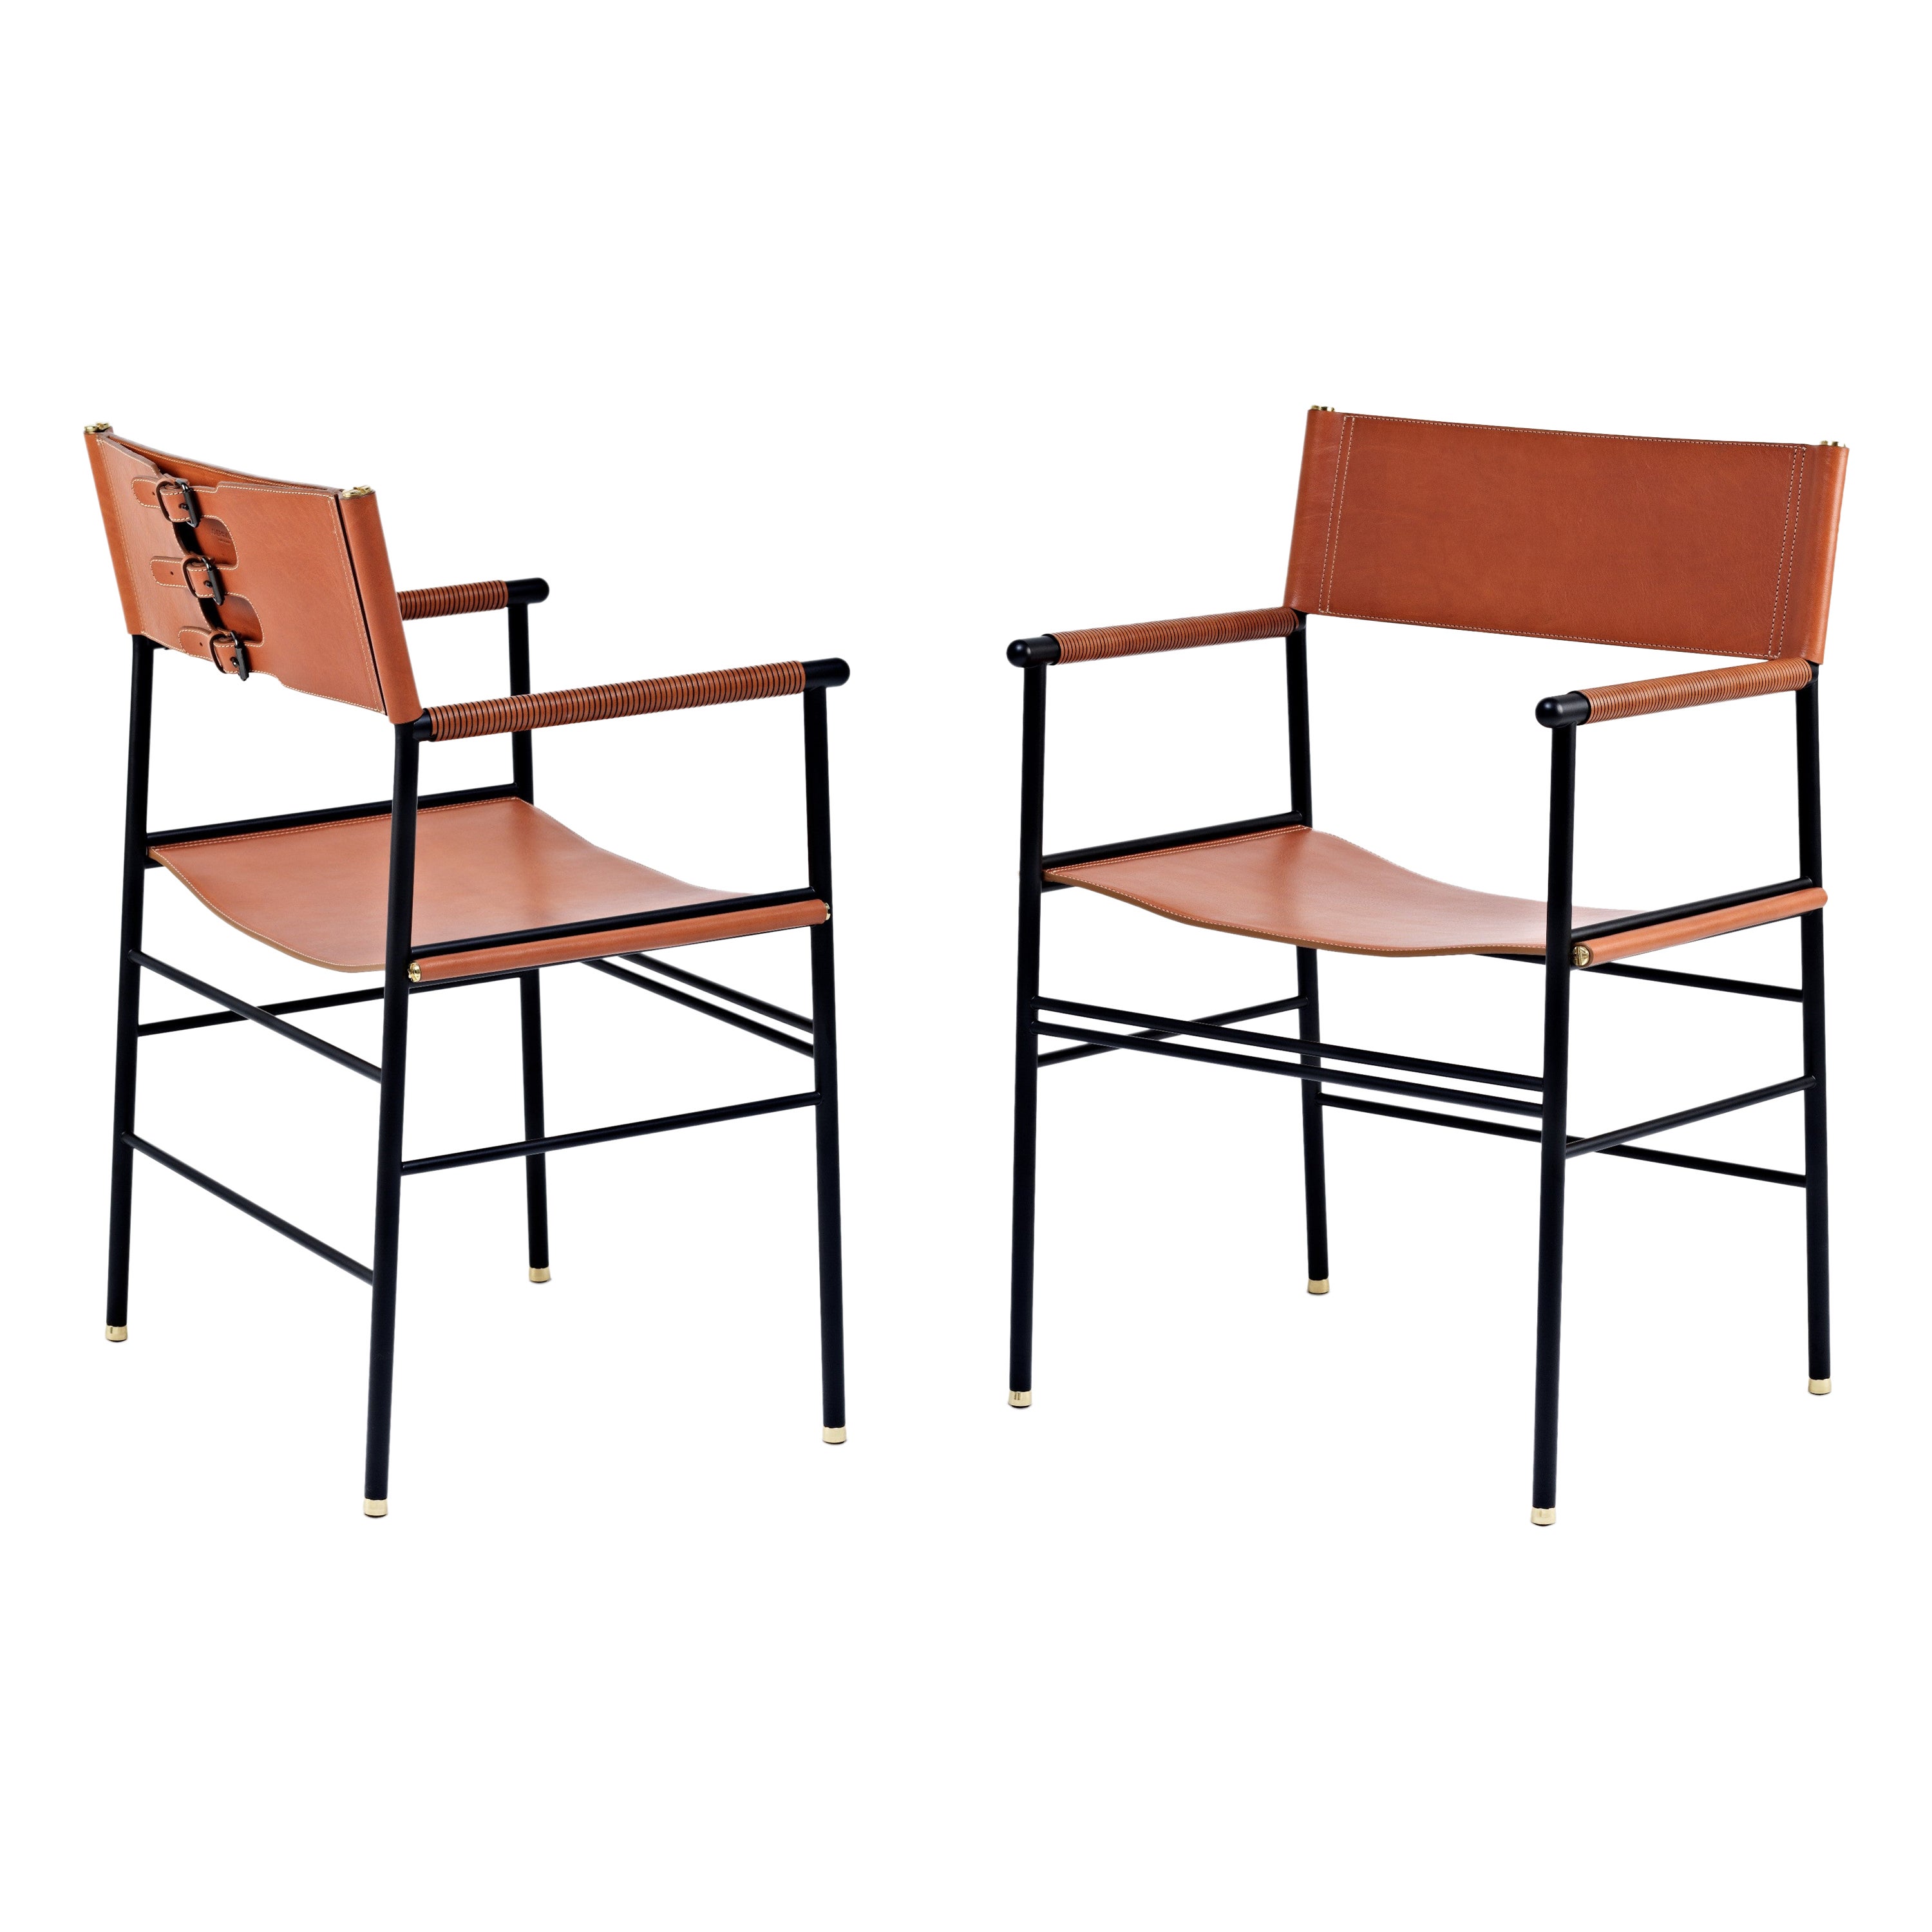 Paire de fauteuils contemporains intemporels faits à la main en cuir naturel brun clair et métal noir